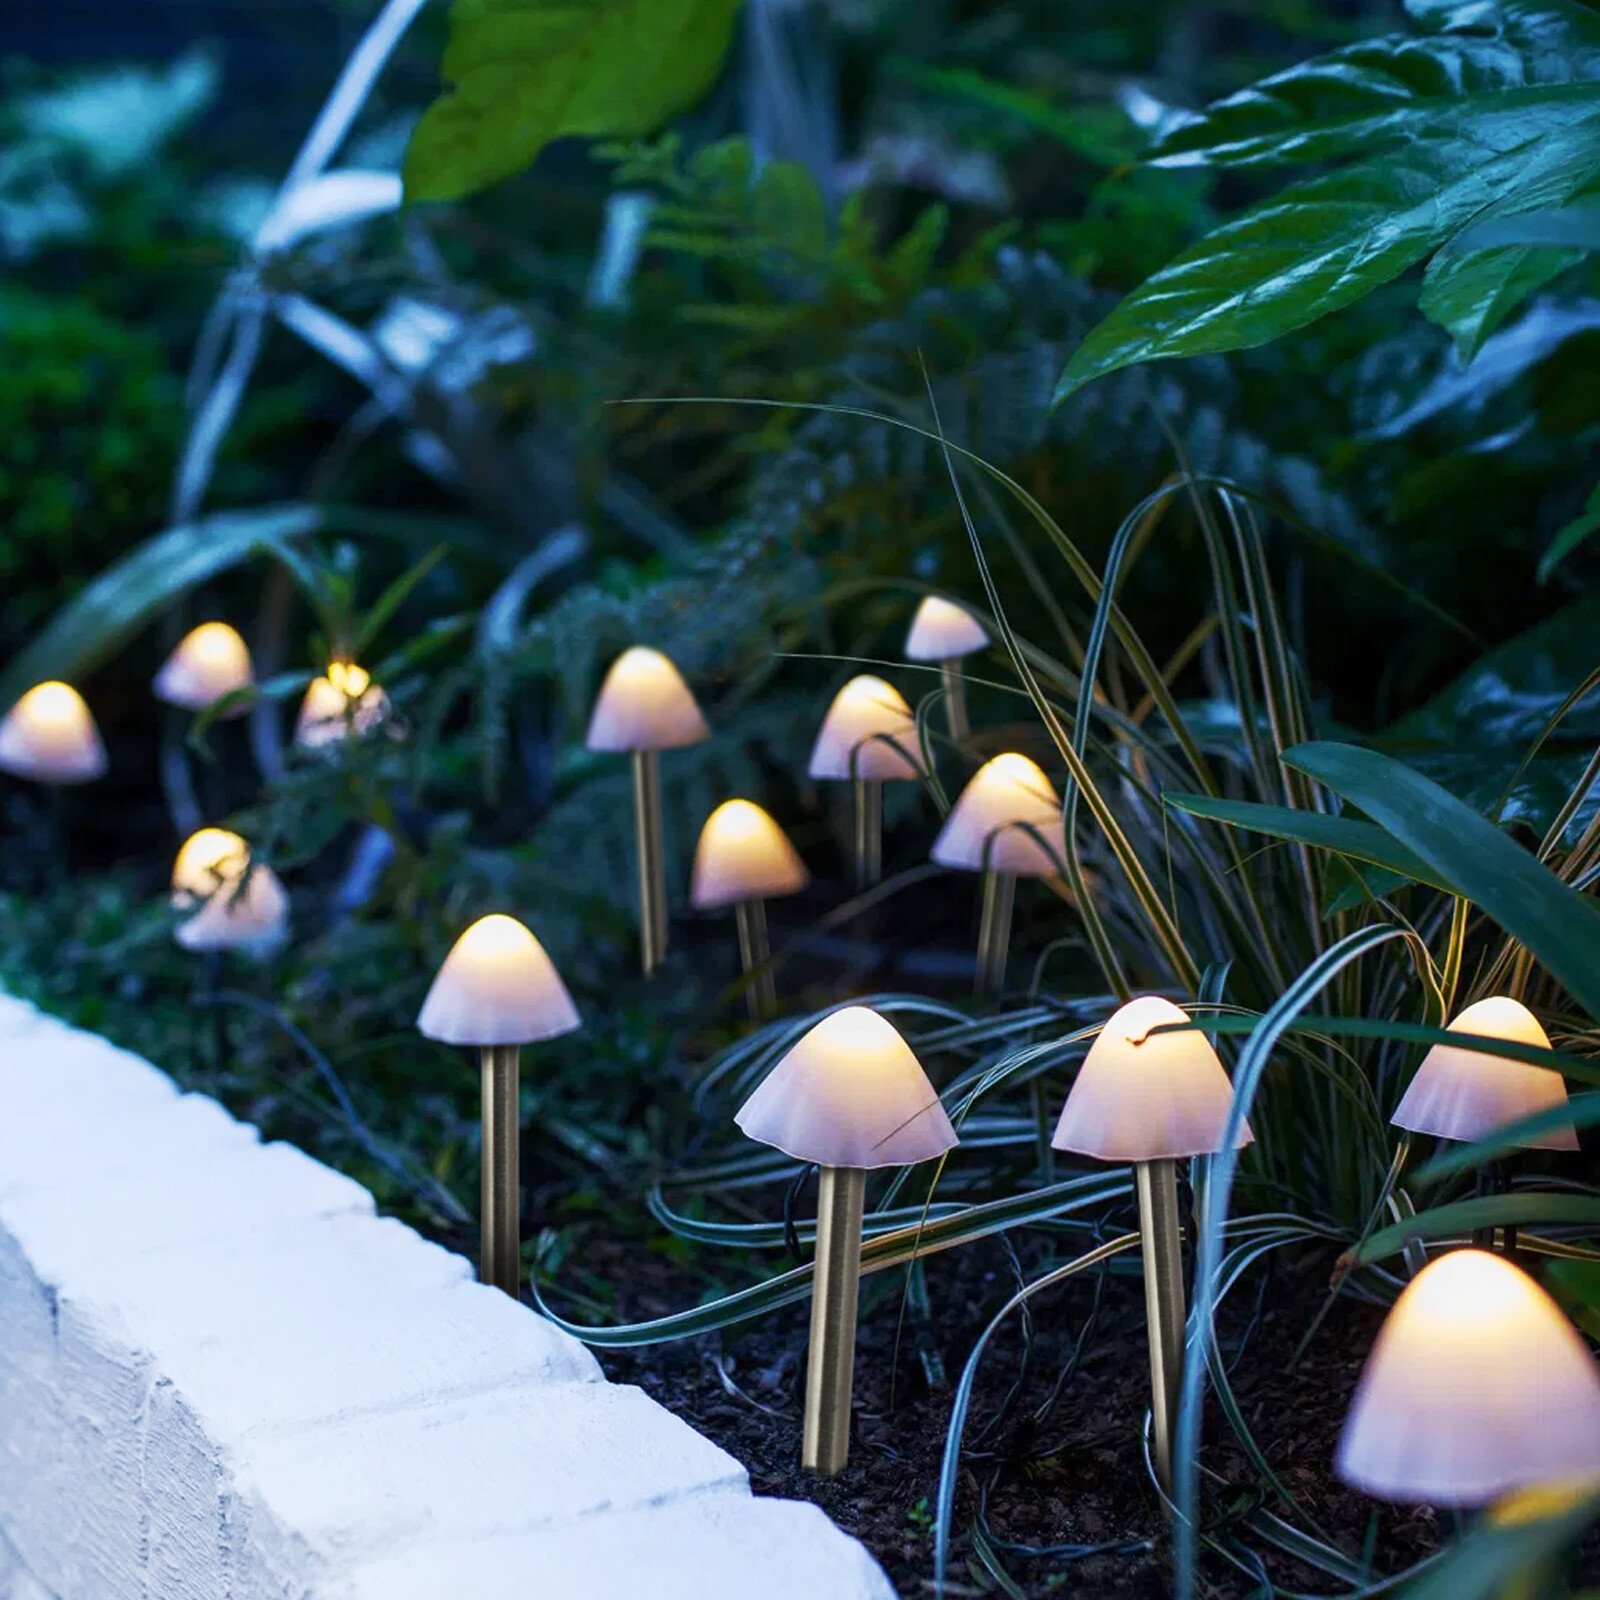 Garden of Eden - Lampă solară LED 12 buc. ciuperci mini alb cald 24 cm x 4 m thumb